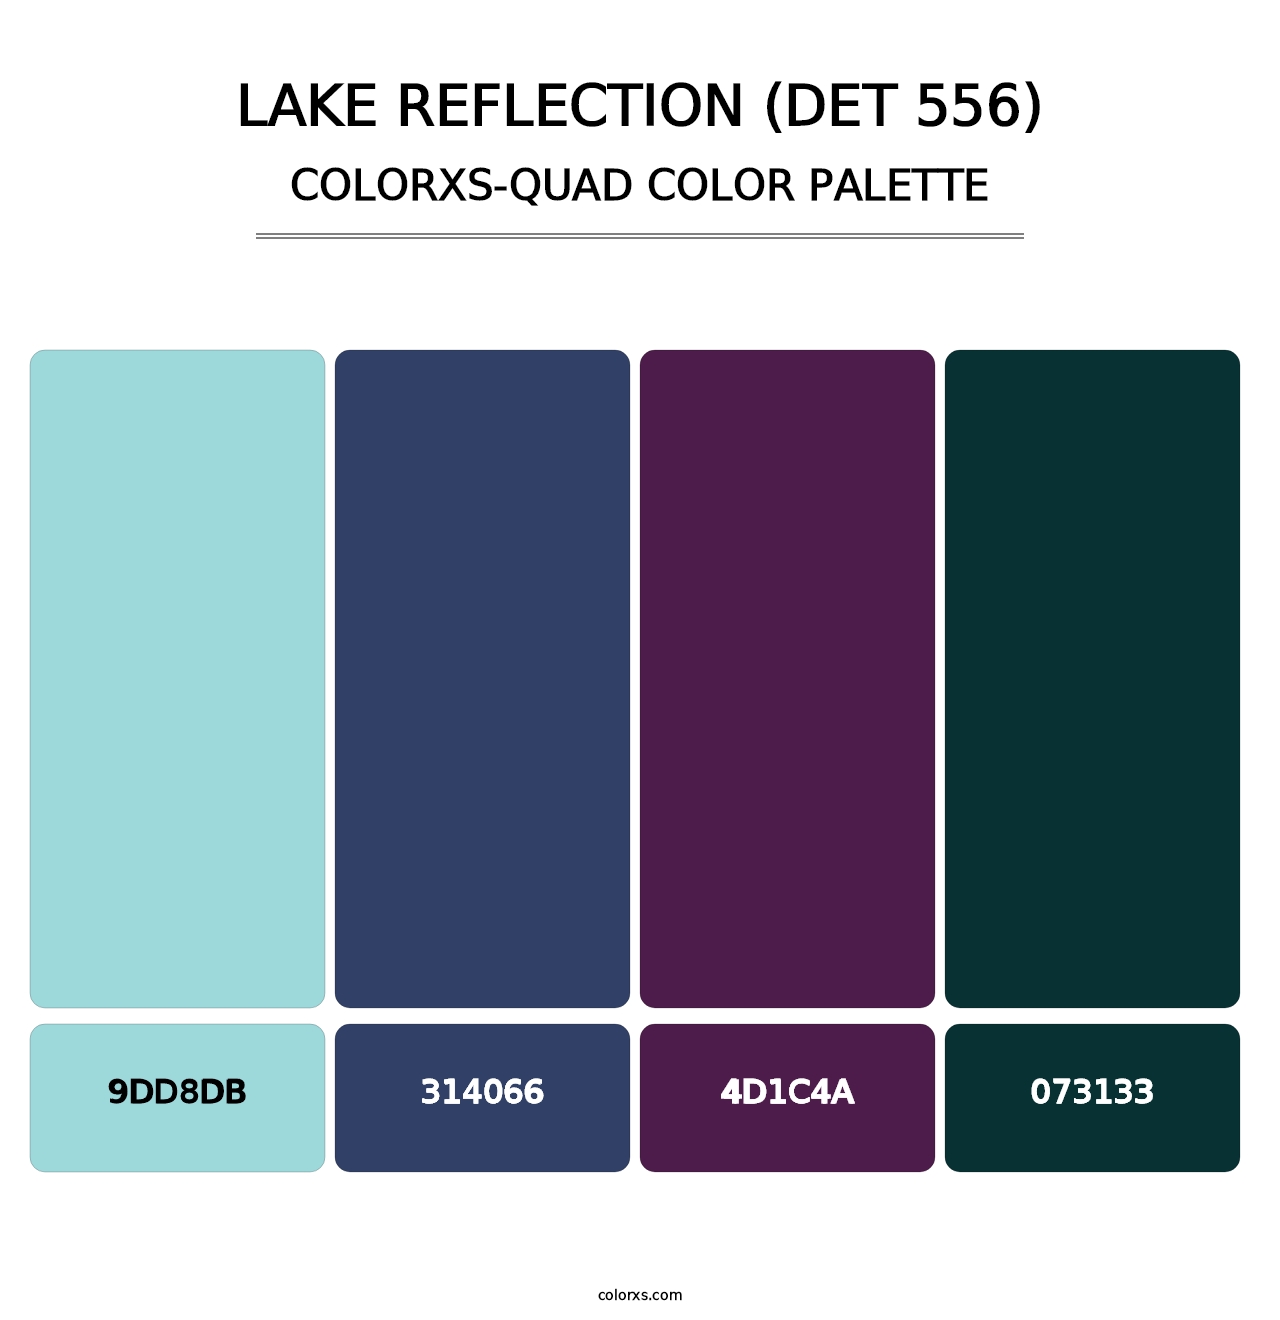 Lake Reflection (DET 556) - Colorxs Quad Palette